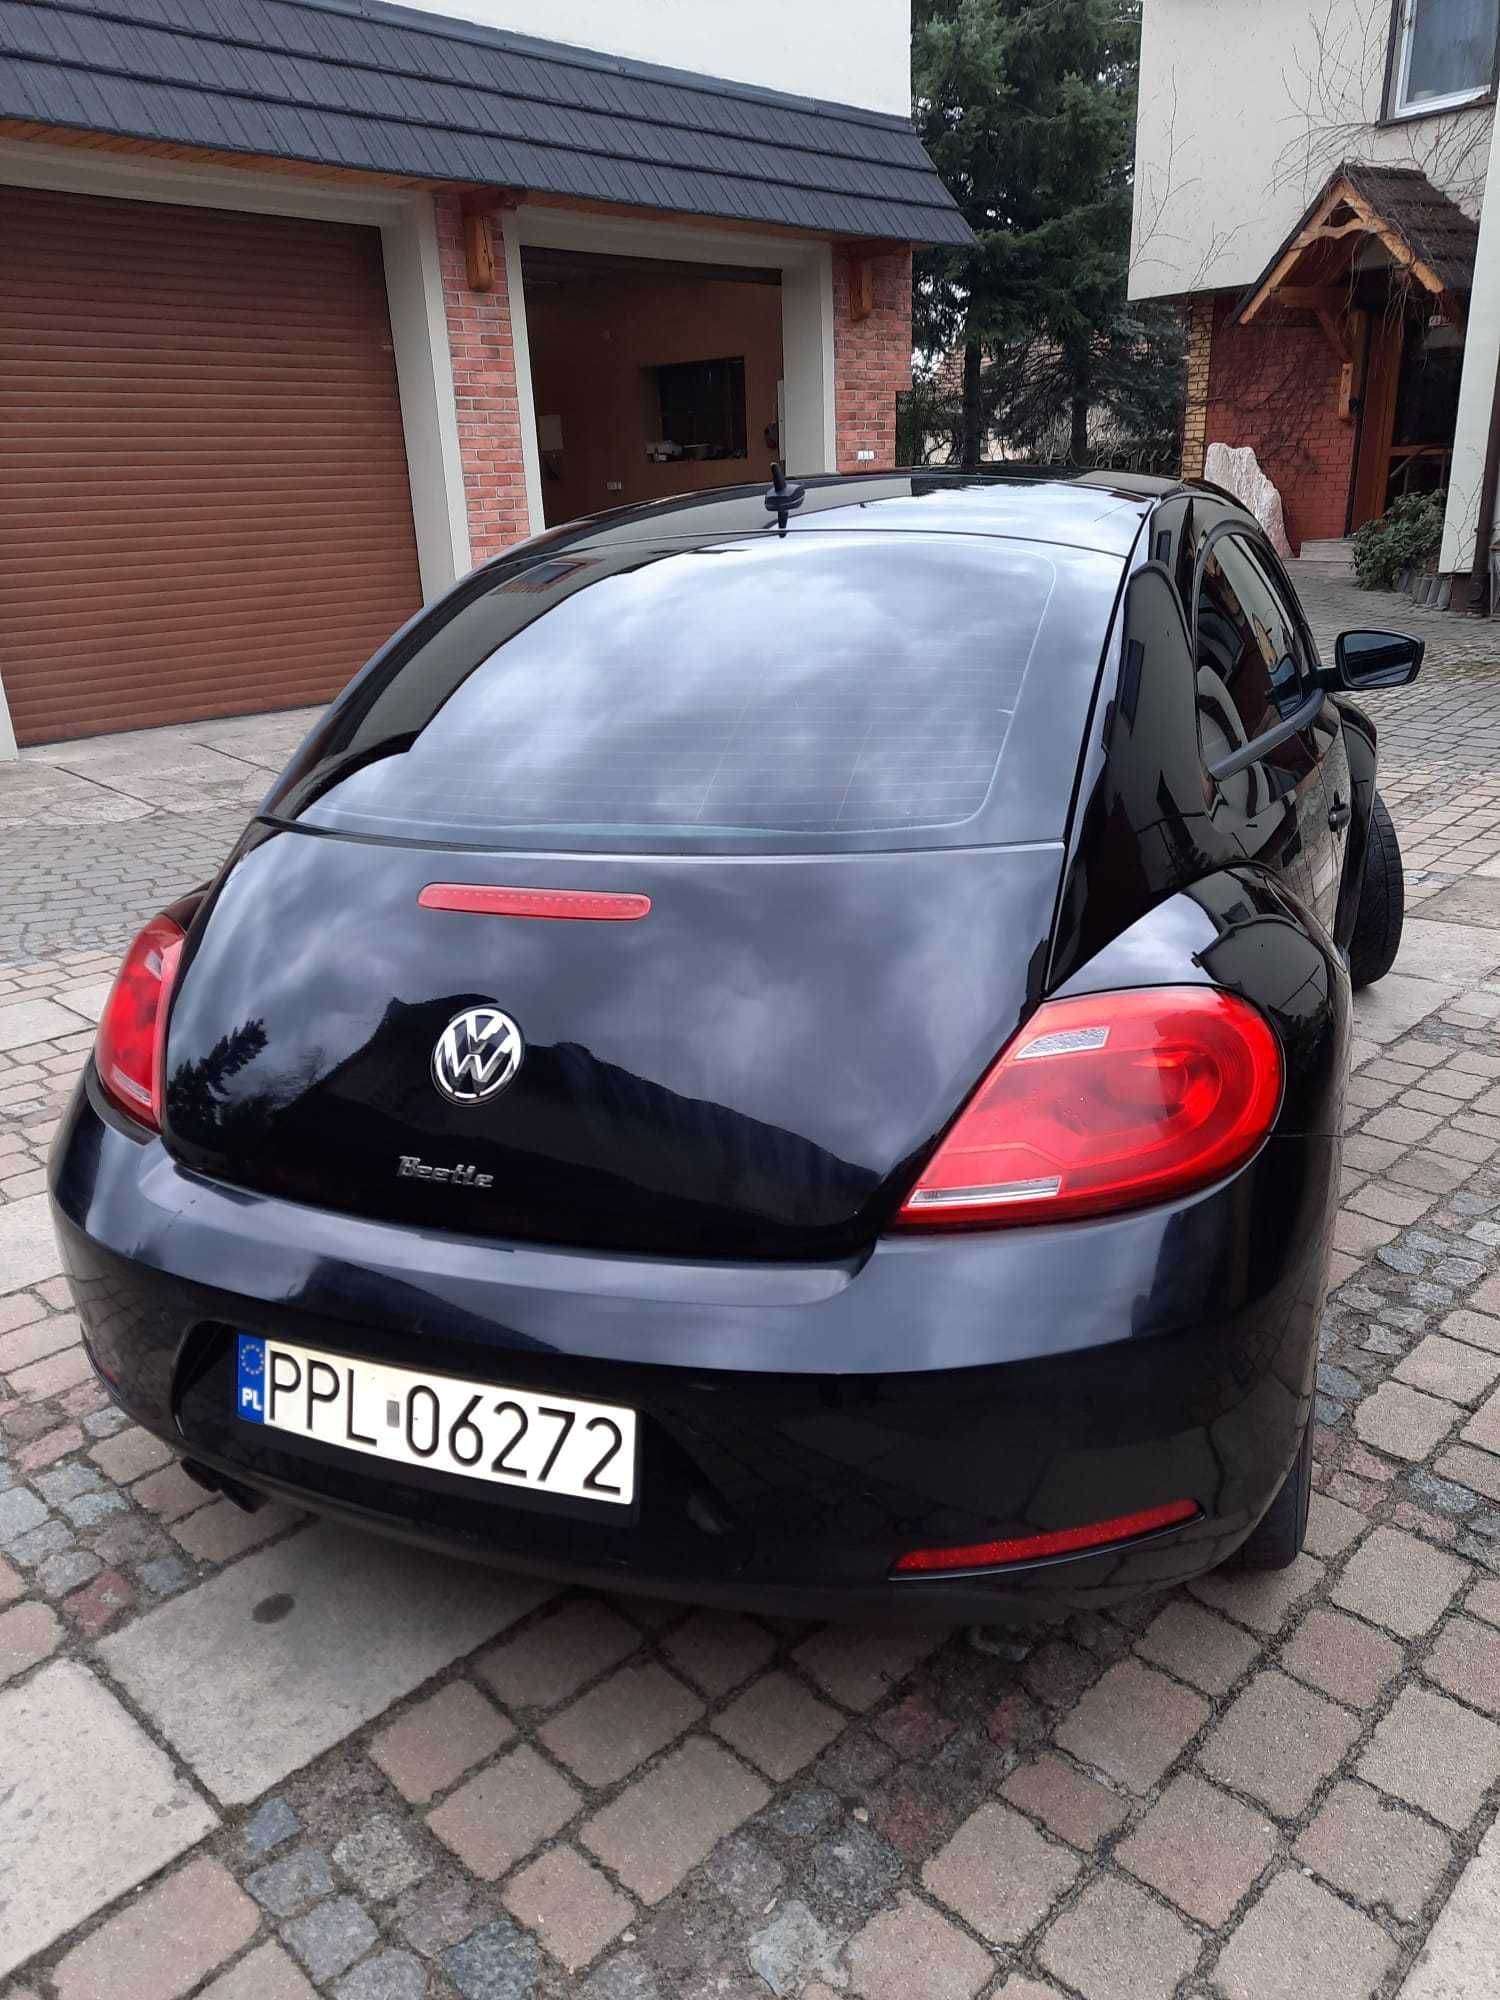 Sprzedam Volkswagen New Beetle